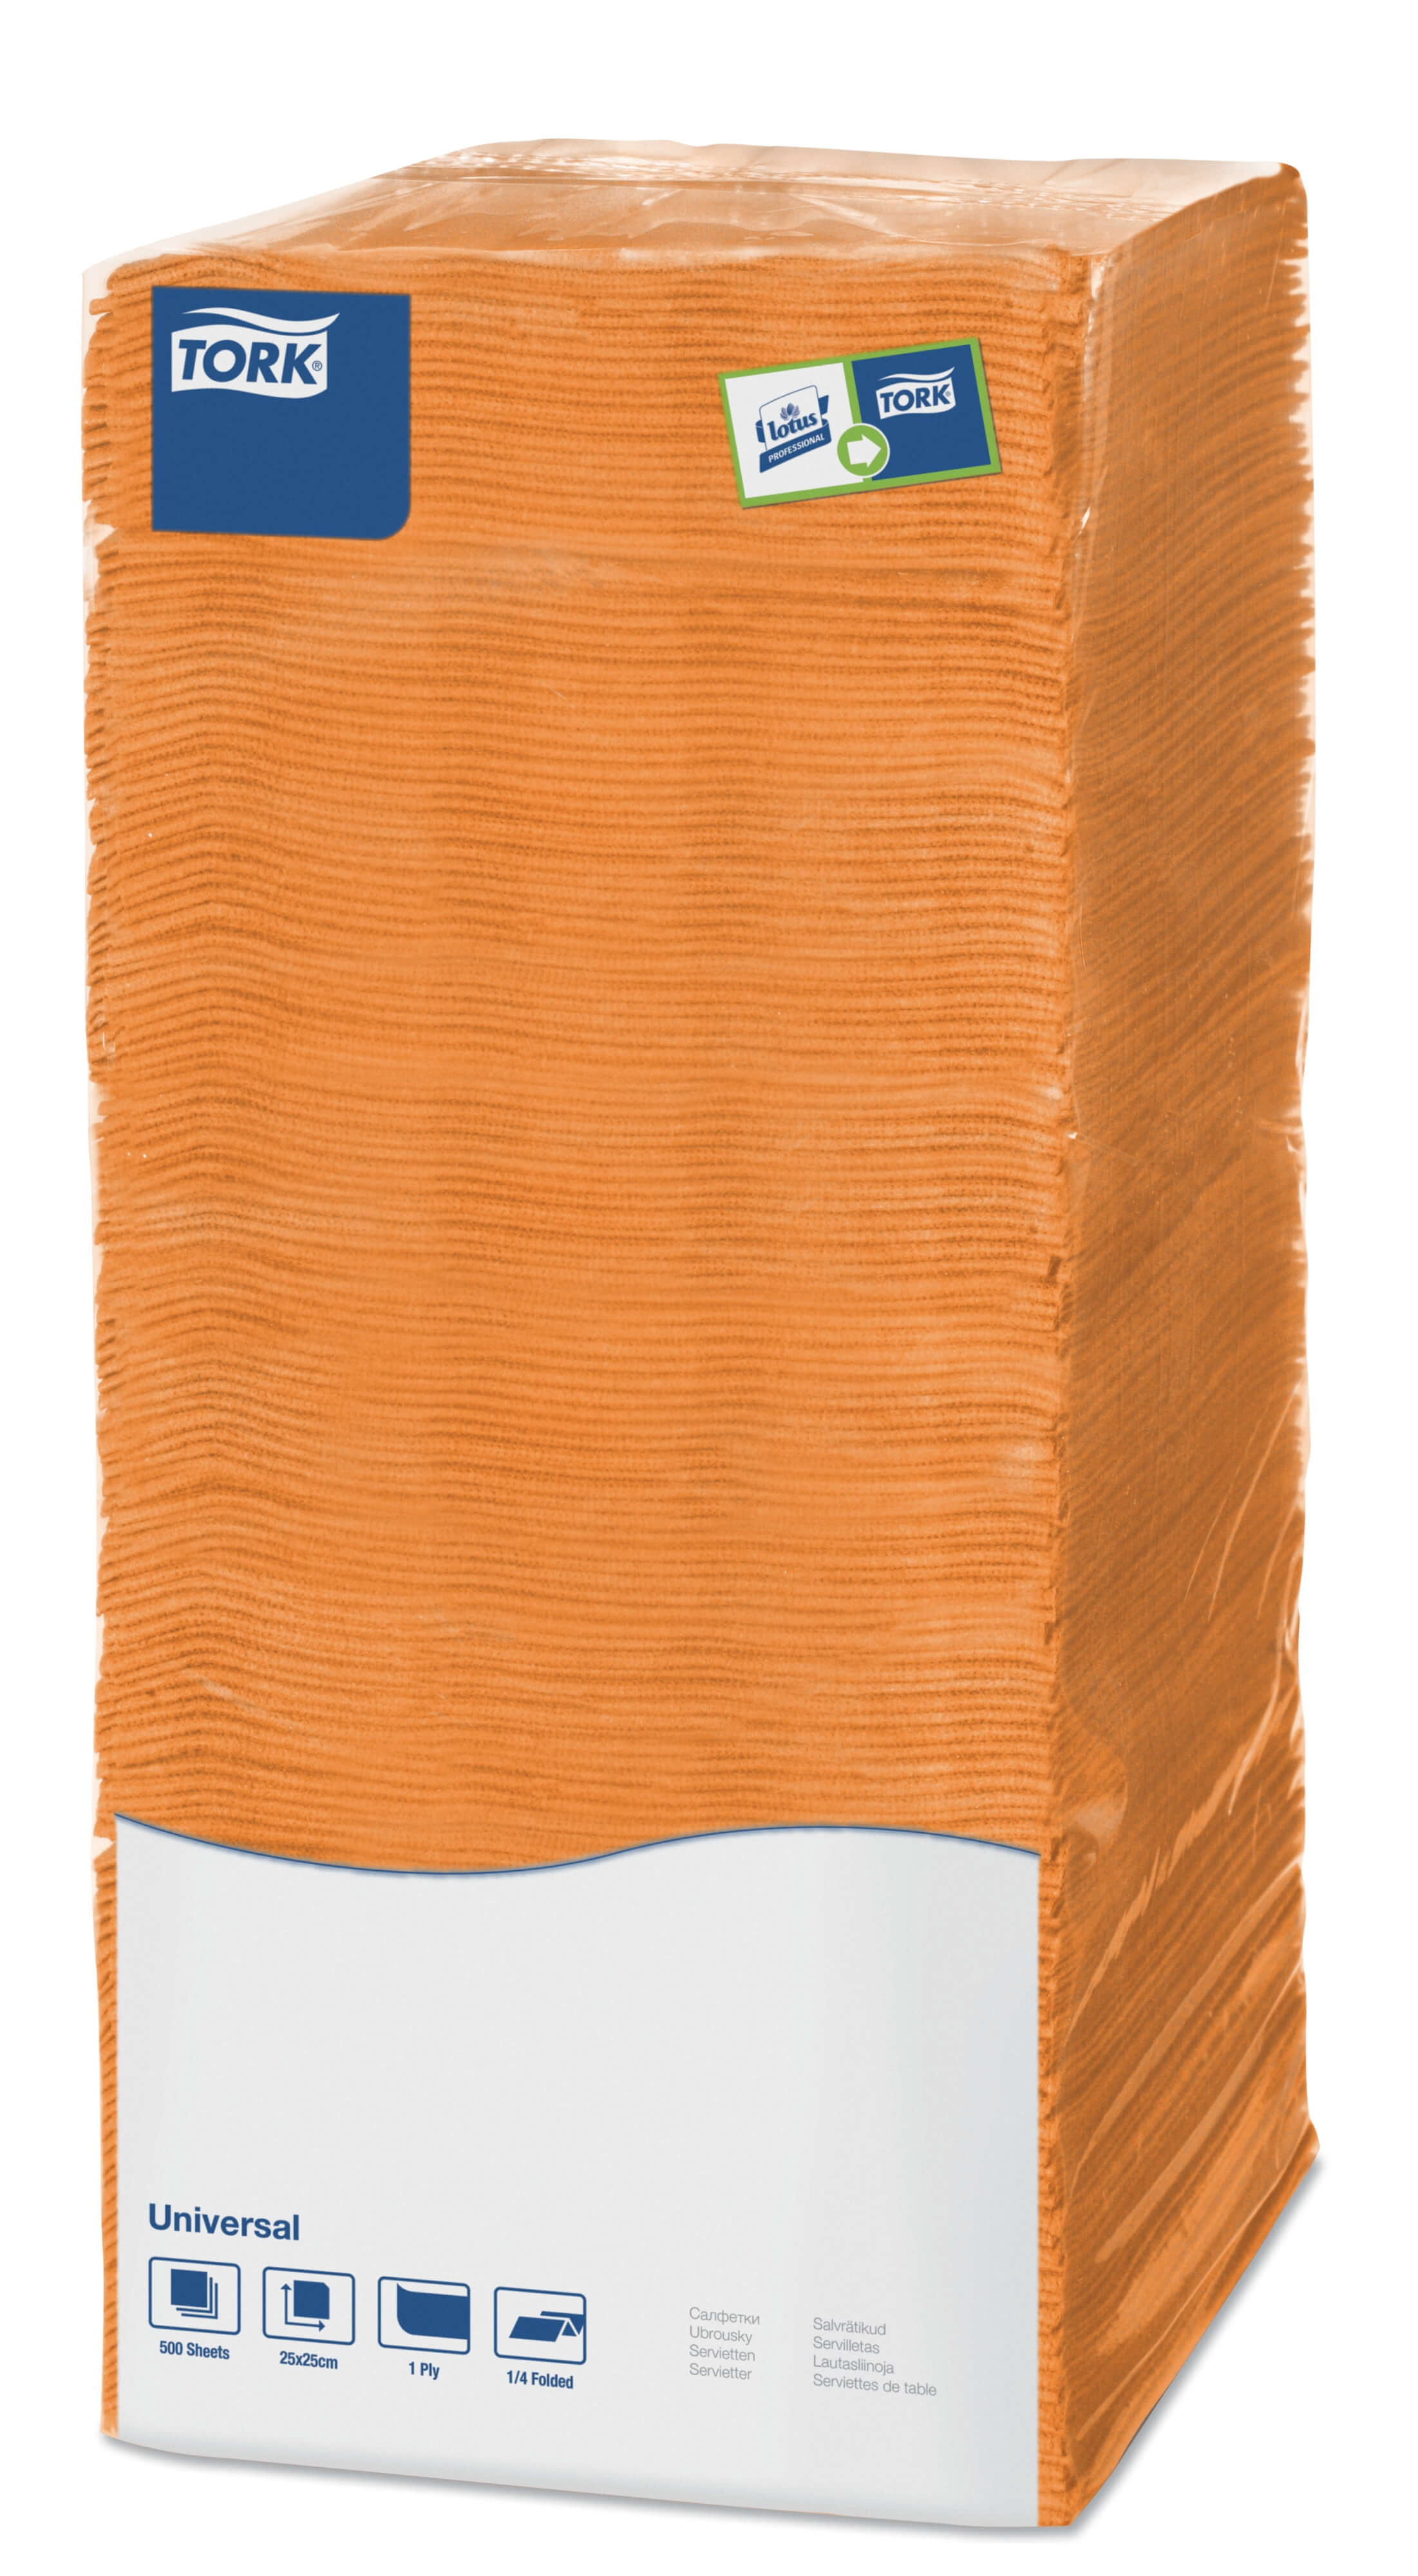 Столовые салфетки Tork Universal однослойные, 500 листов BigPack 25х25см (оранжевые)